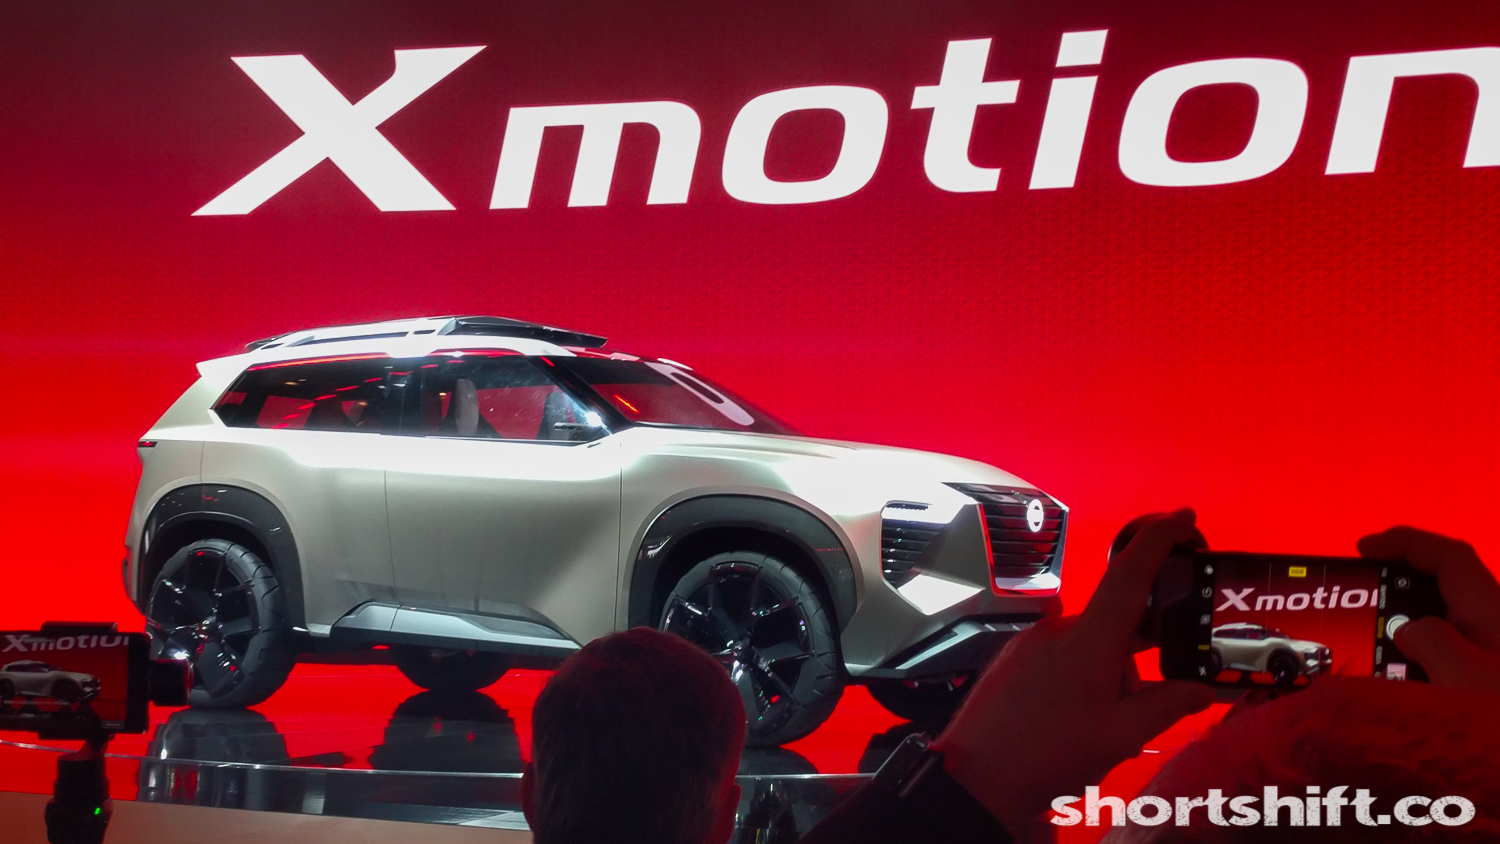 Nissan Xmotion Concept - Short Shift (2)